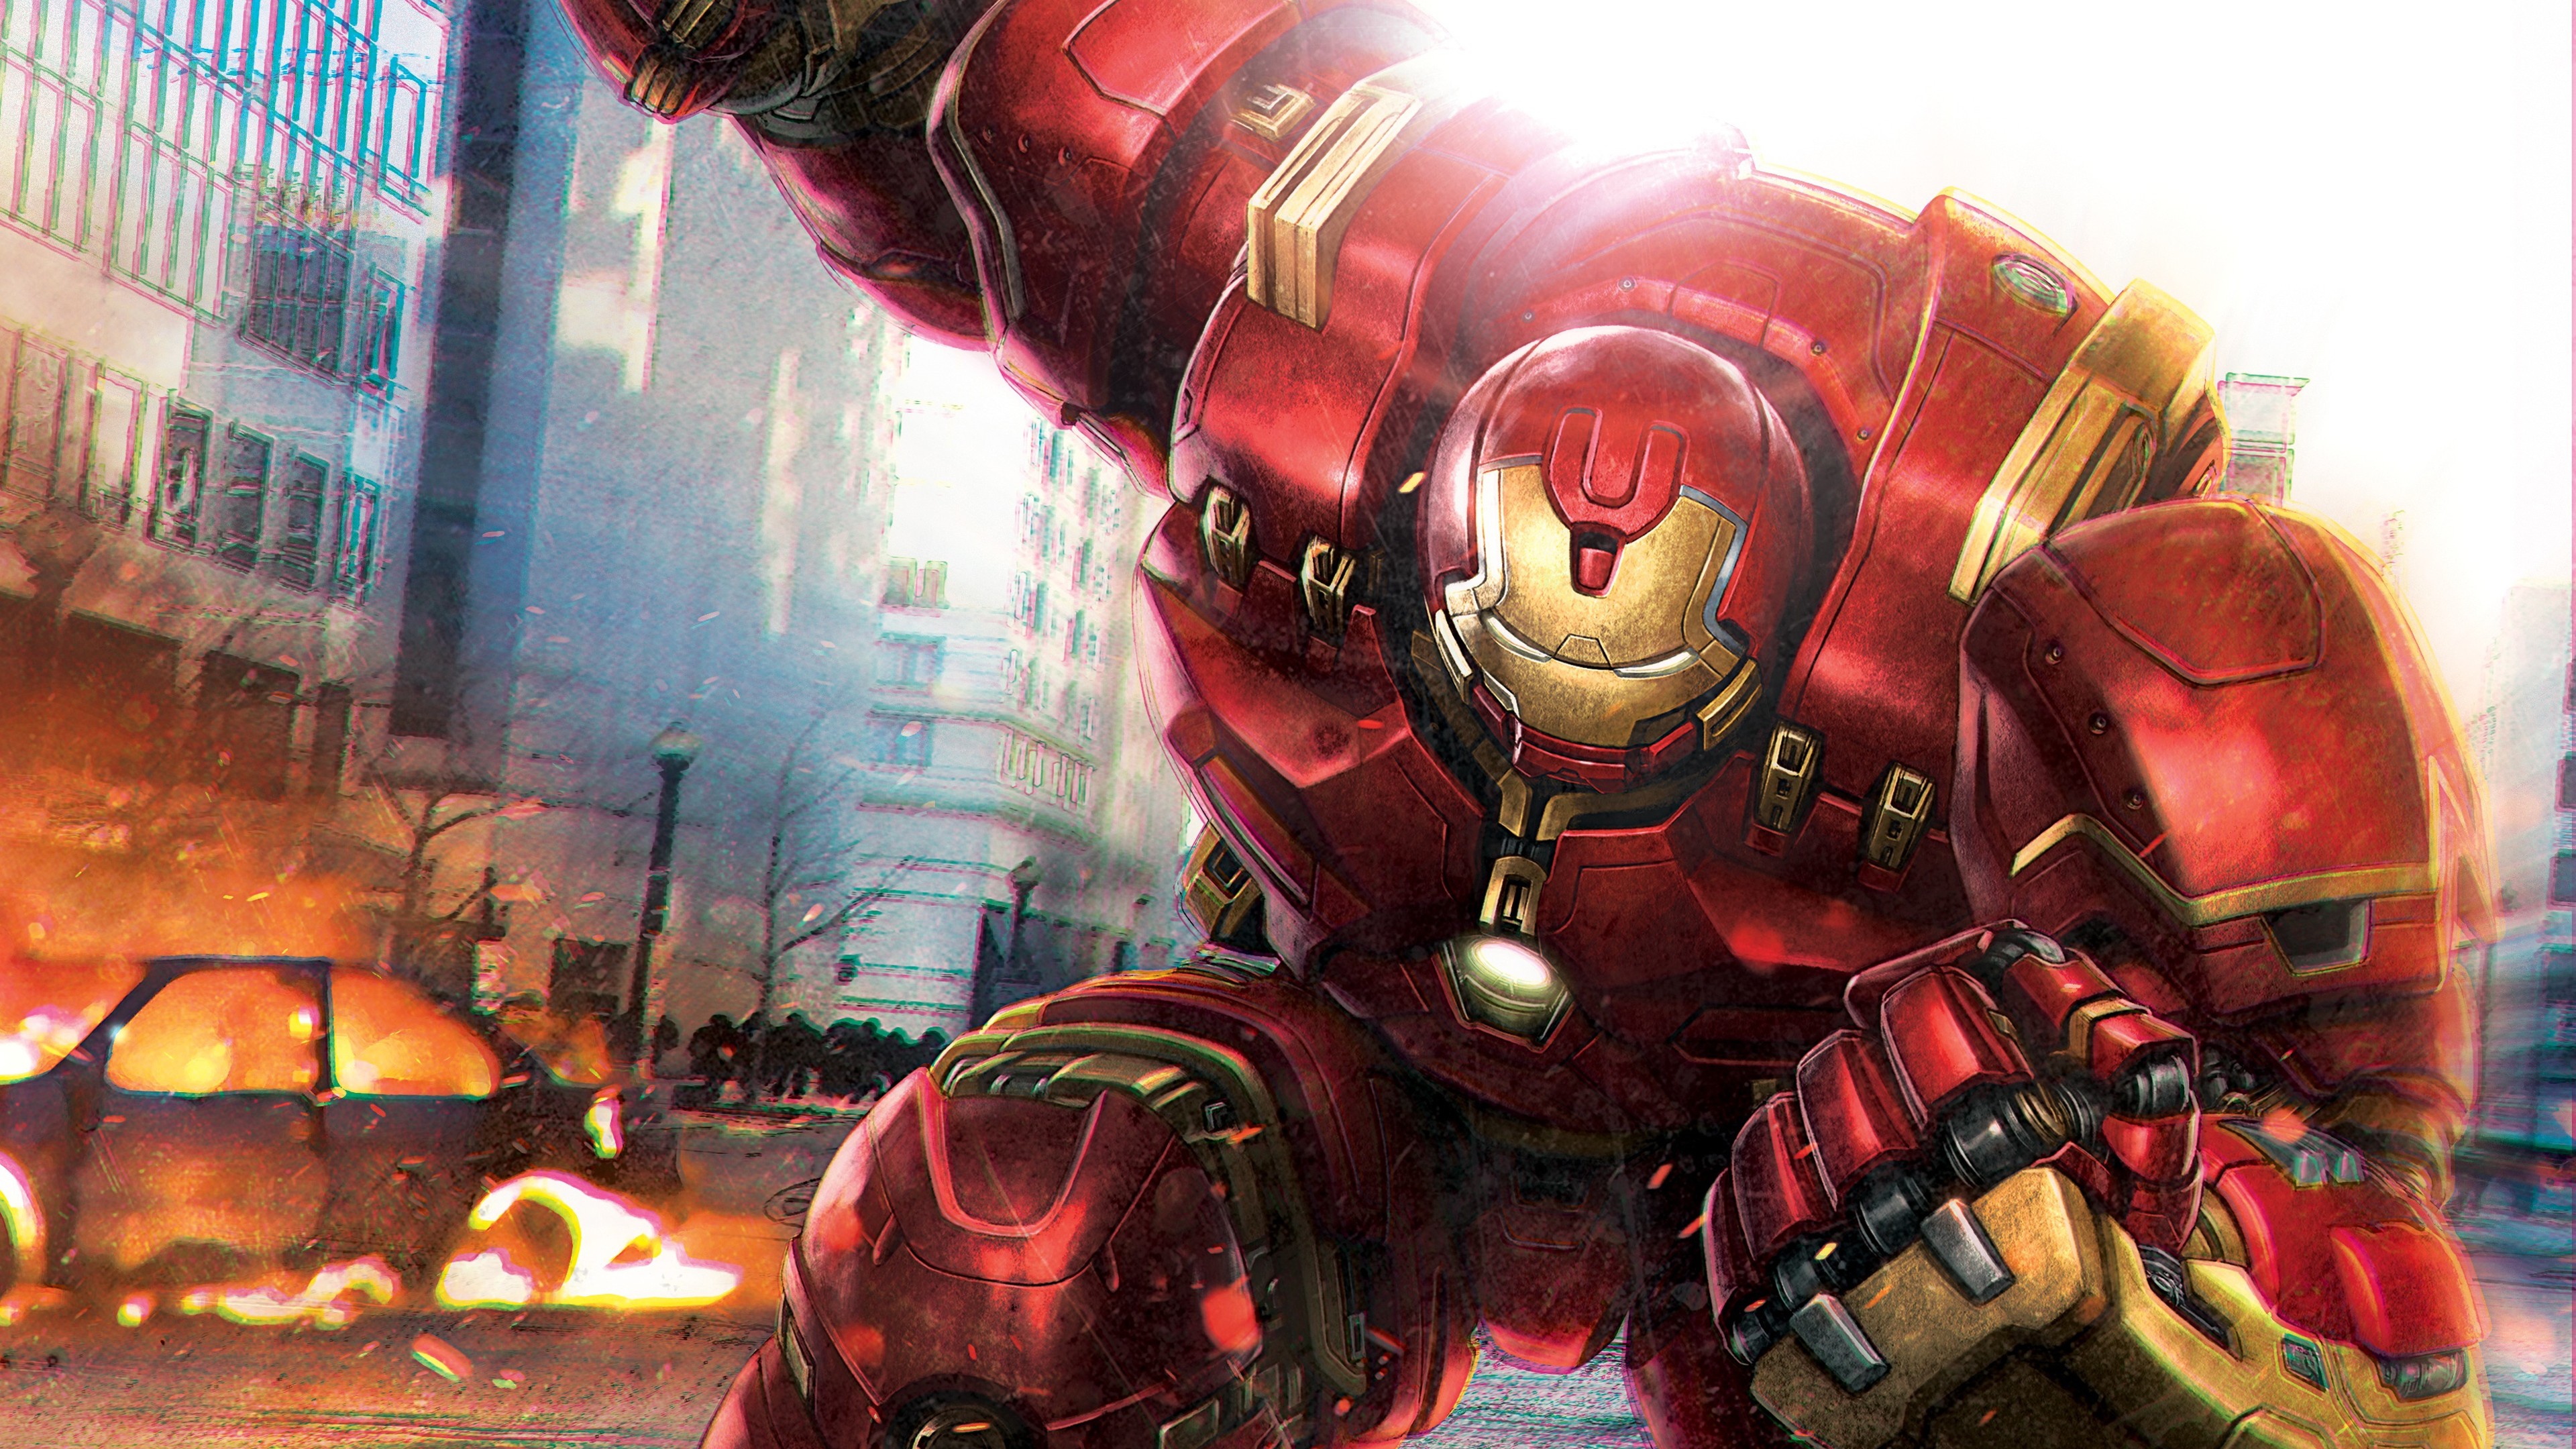 Iron Man Image Free Download